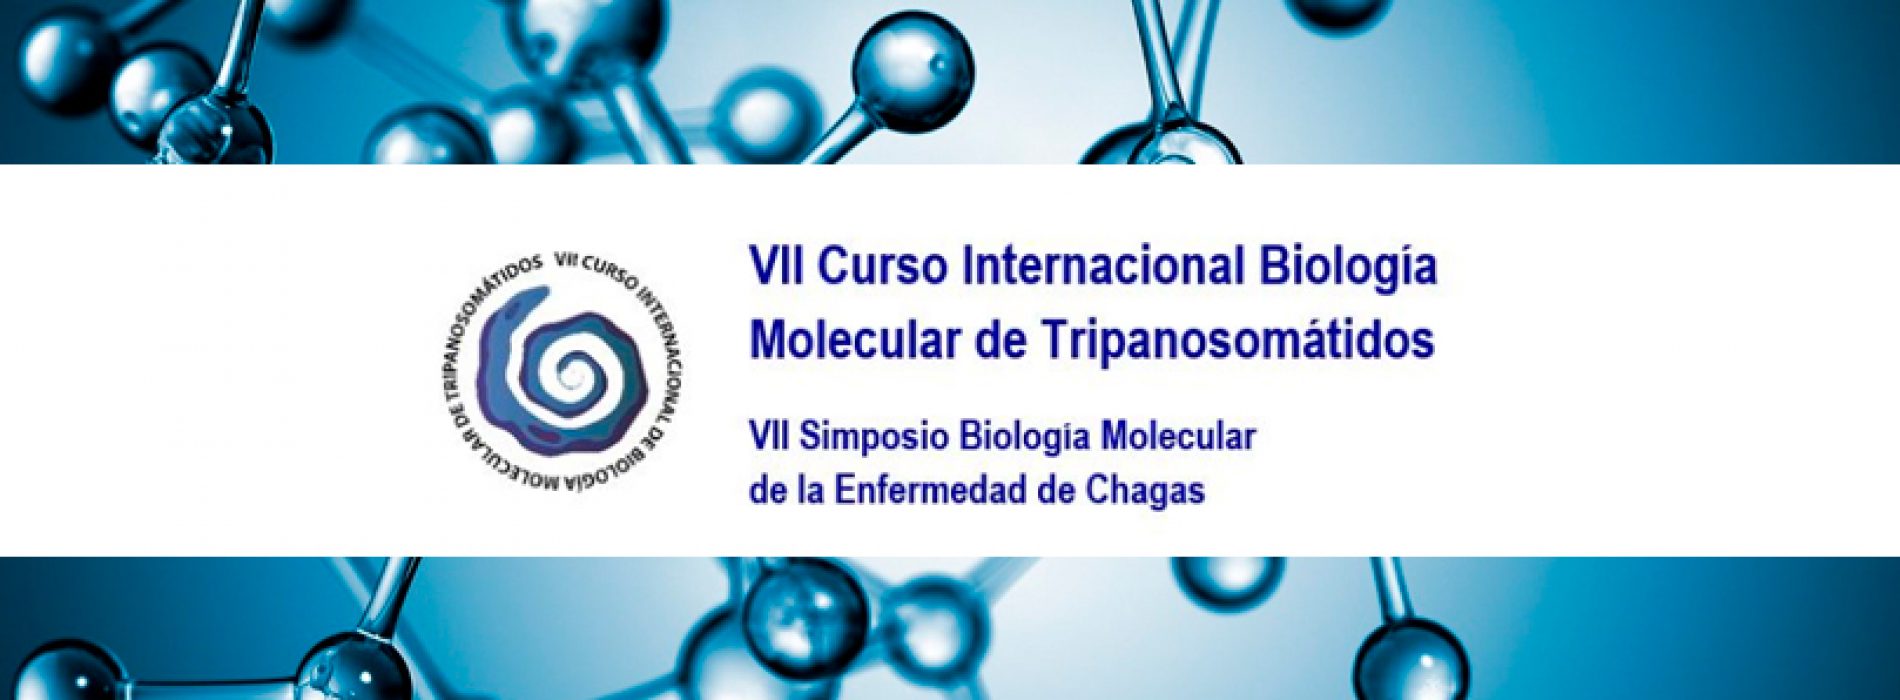 7th International course on Molecular Biology of Tripanosomátidos